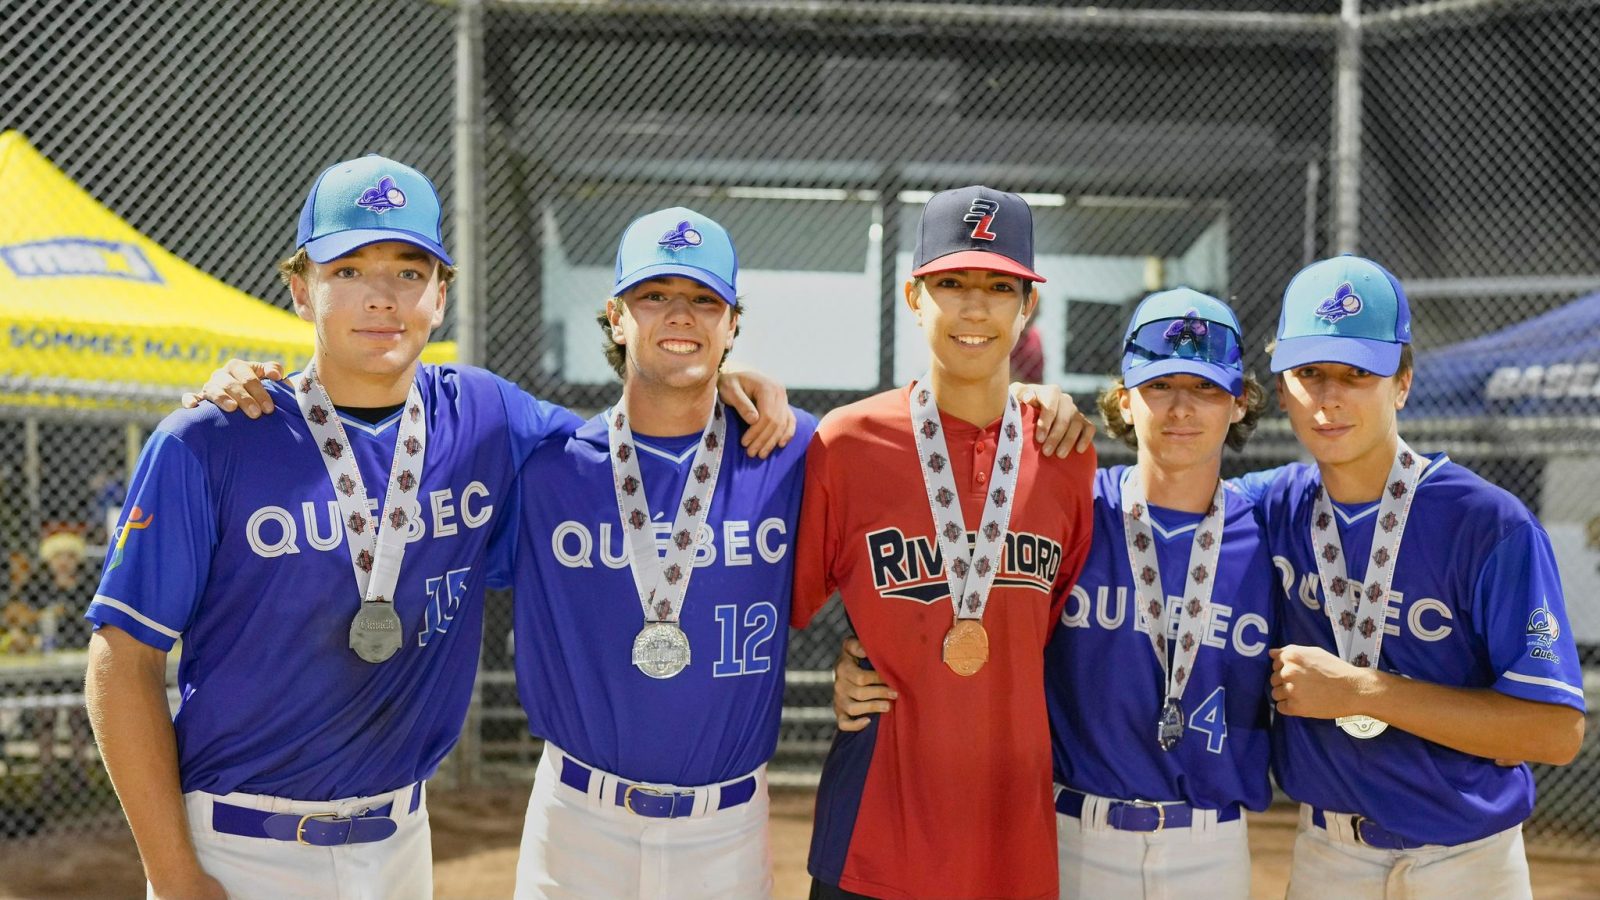 L’or et l’argent pour cinq jeunes joueurs de baseball de De Mortagne